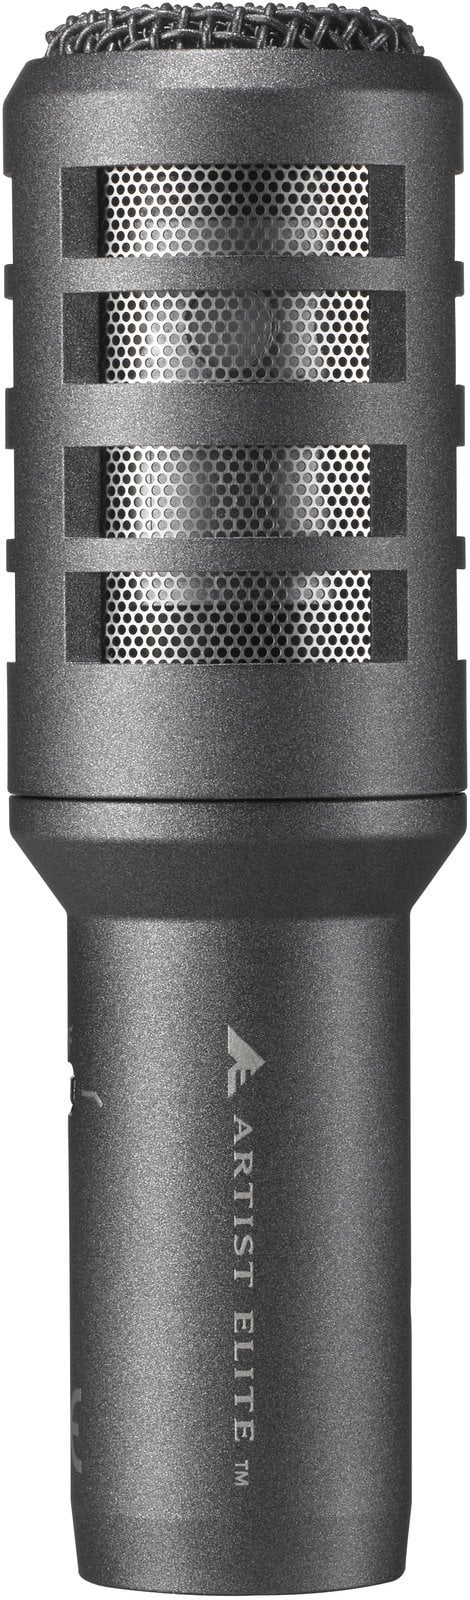 Dynamický nástrojový mikrofon Audio-Technica AE2300 Dynamický nástrojový mikrofon